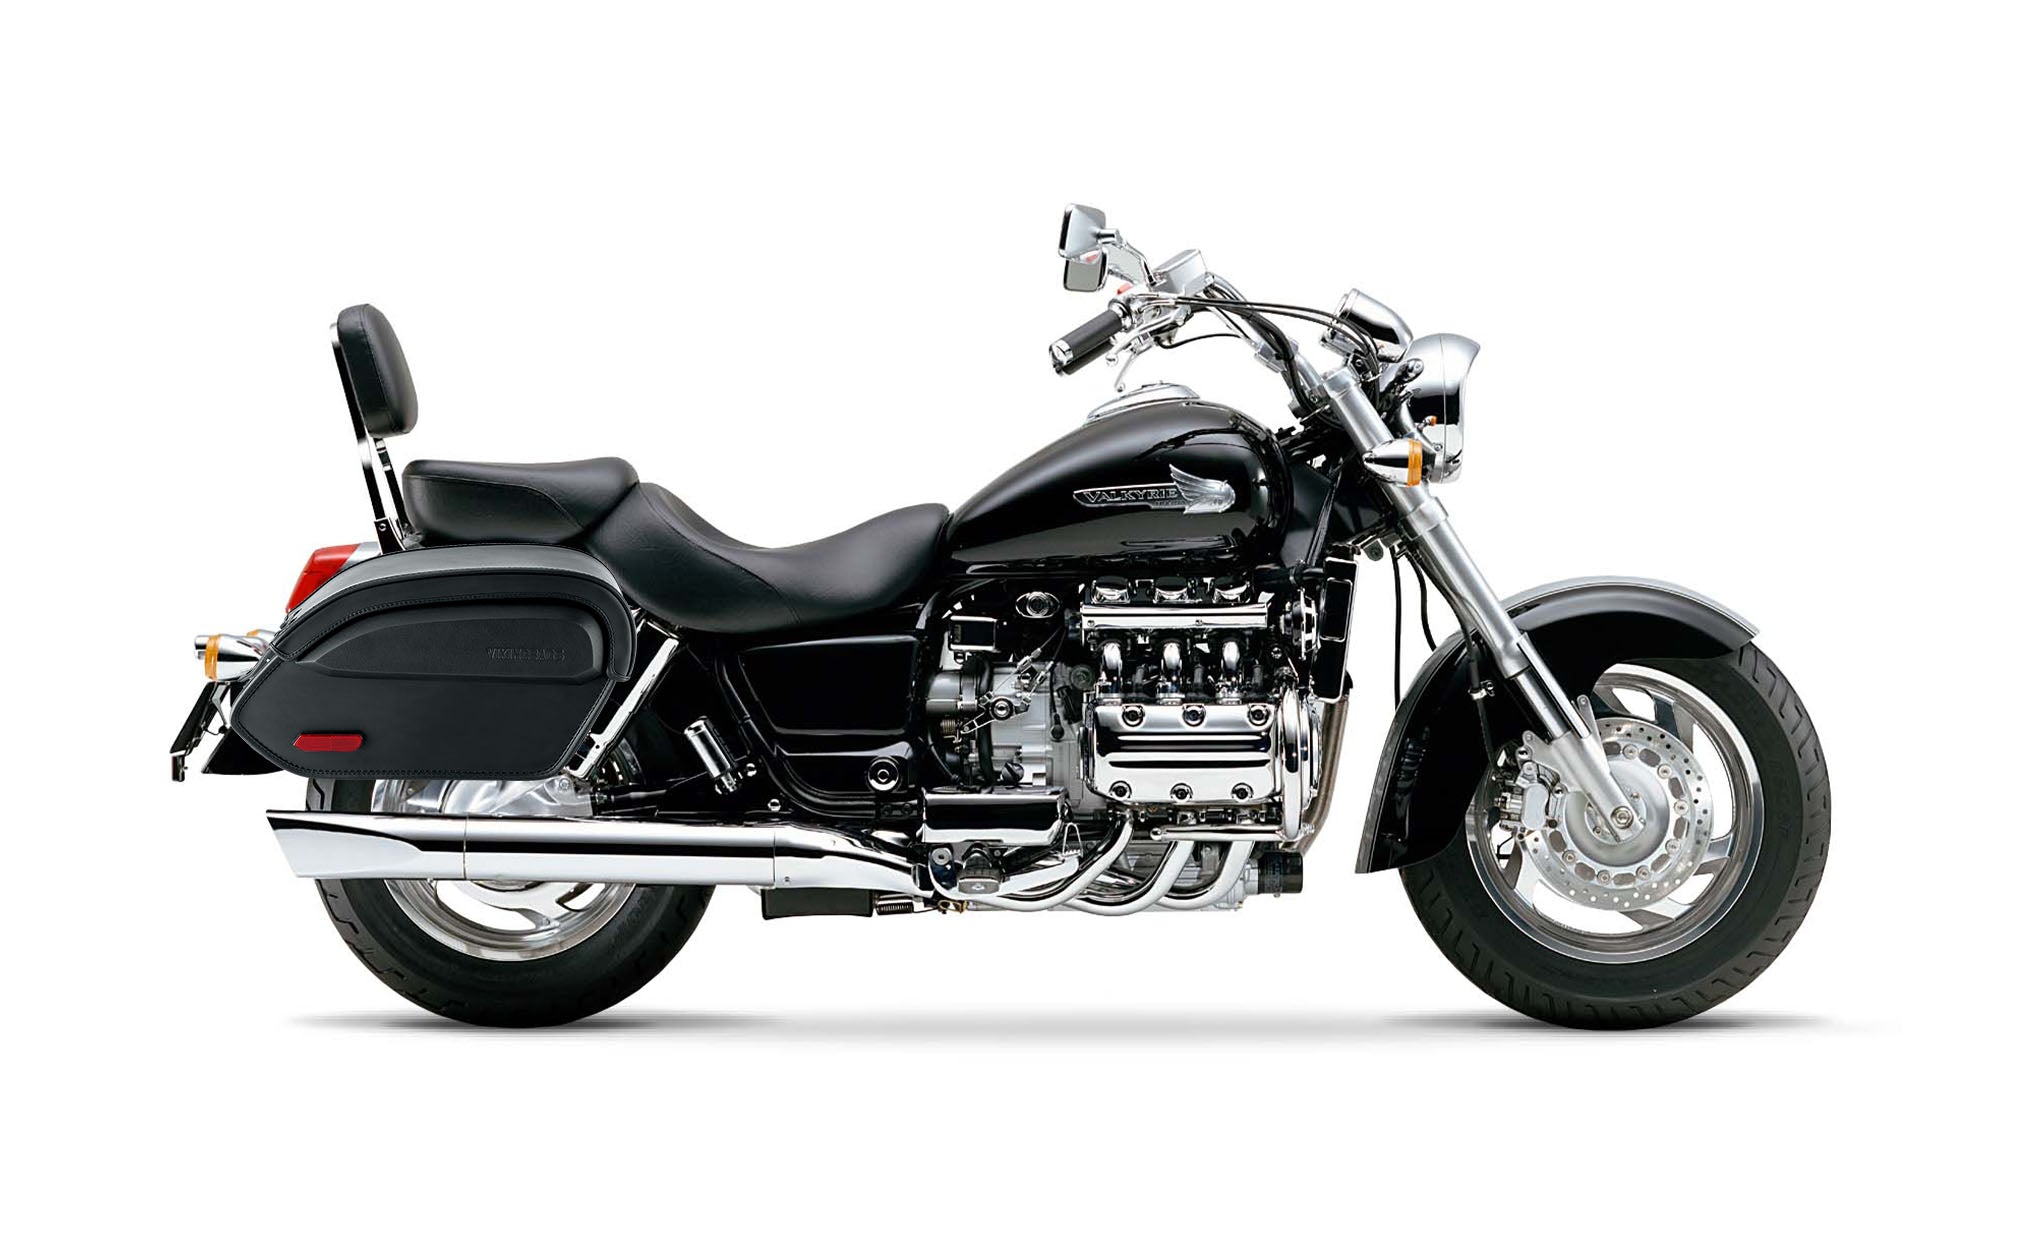 Viking Aviator Large Honda 1500 Valkyrie Standard Leather Motorcycle Saddlebags on Bike Photo @expand